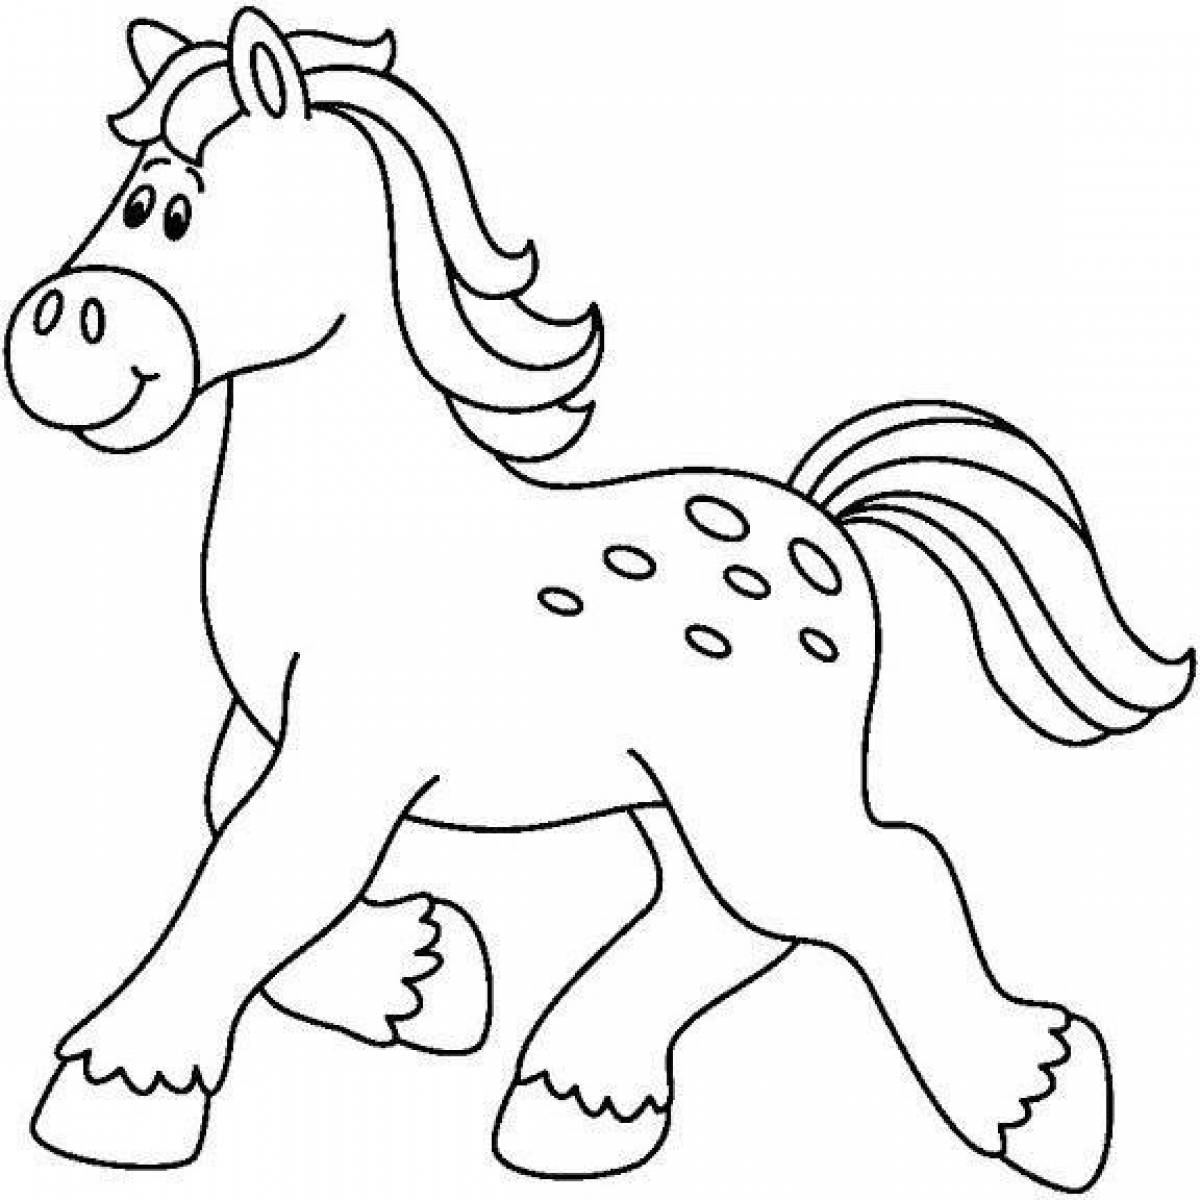 Лошадка для 6 лет. Трафарет лошадки для детей. Лошадка раскраска для детей. Лошадь раскраска для детей. Лошадь трафарет для детей.